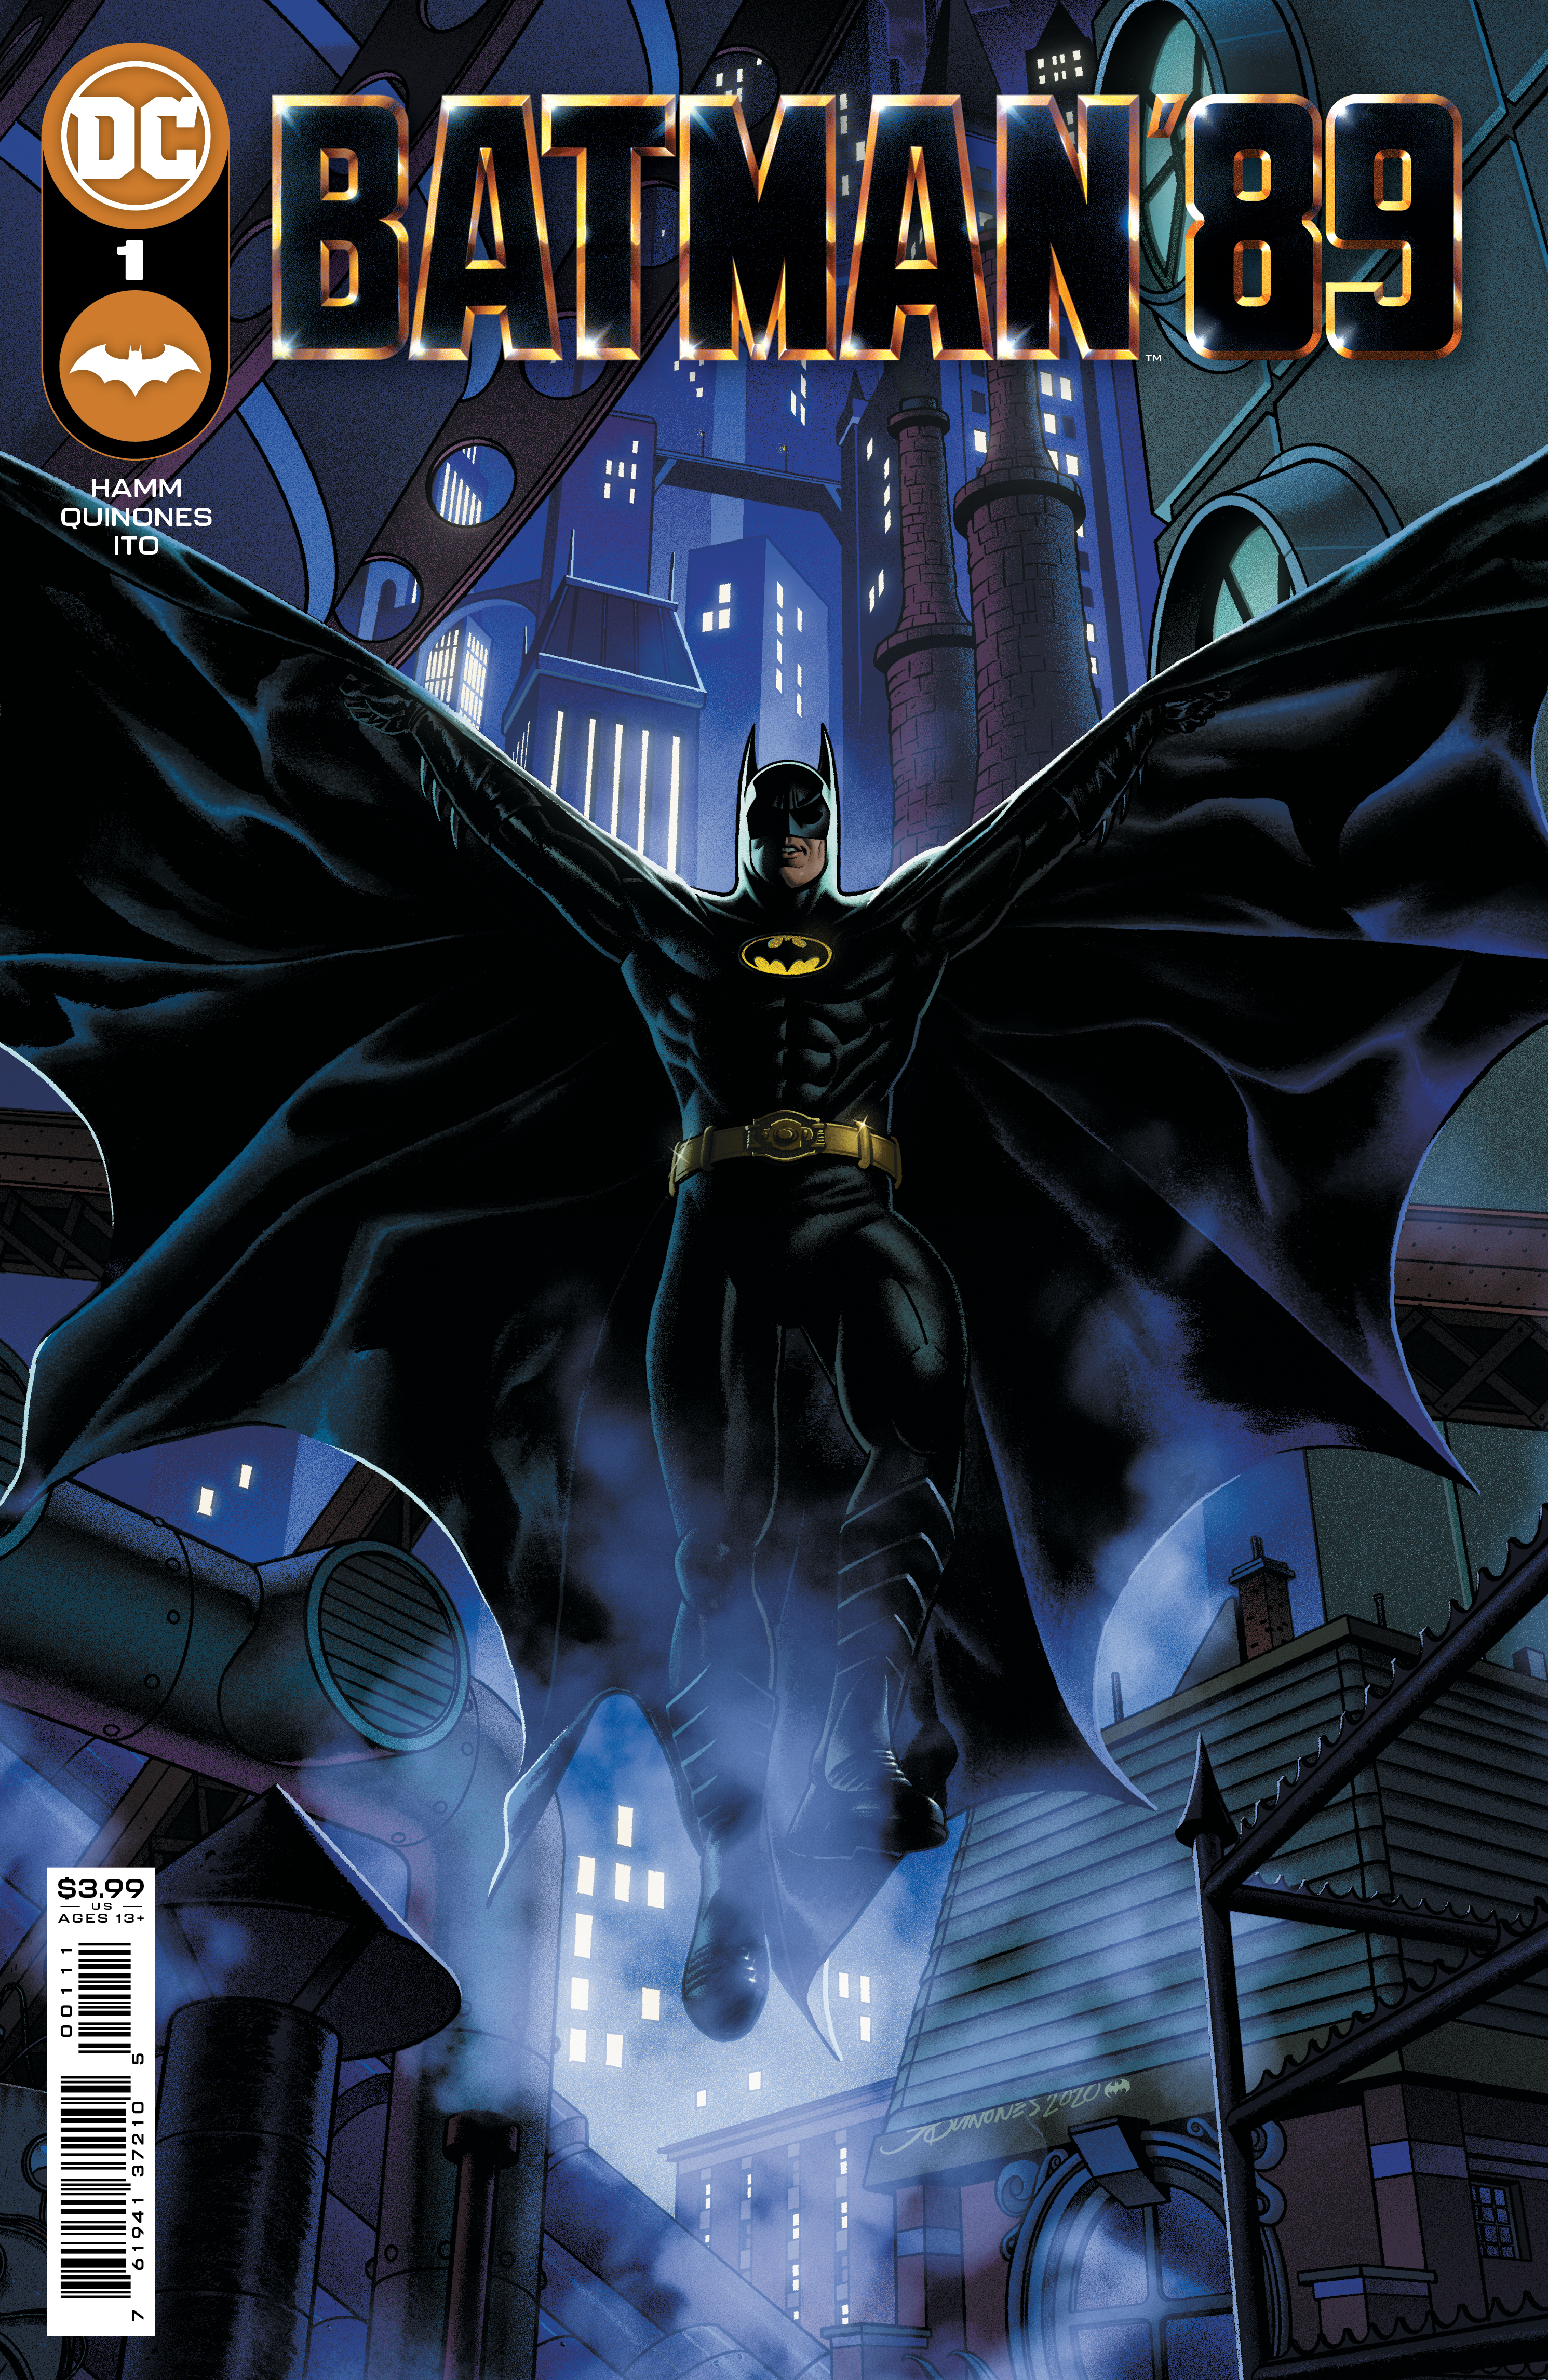 Batman 89 #1 Cover A Joe Quinones (Of 6)